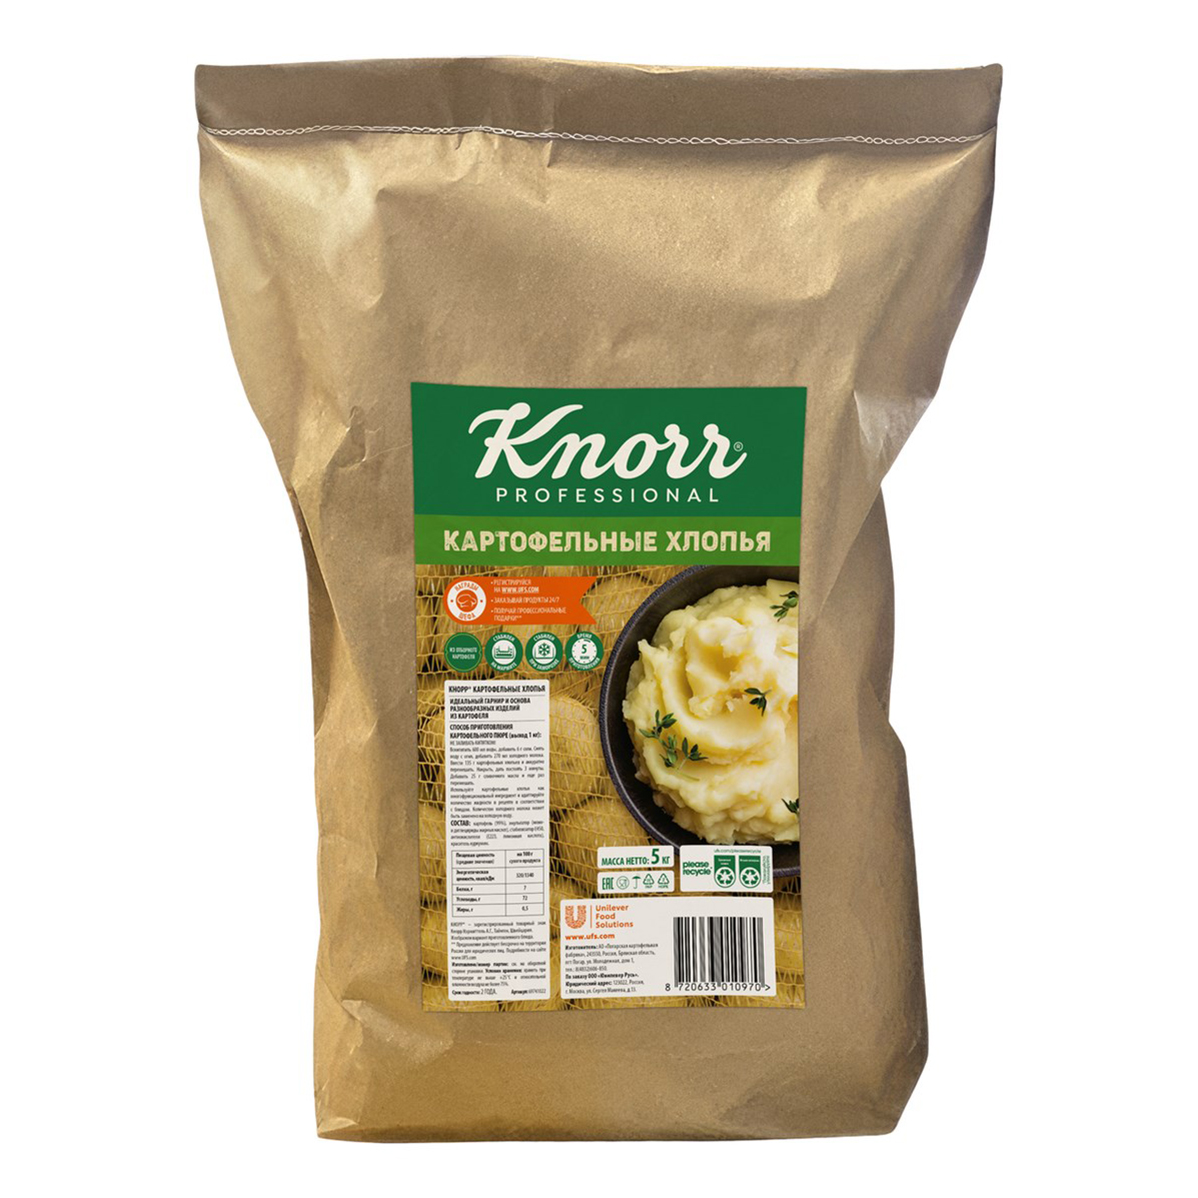 Хлопья Knorr Professional картофельные 5 кг